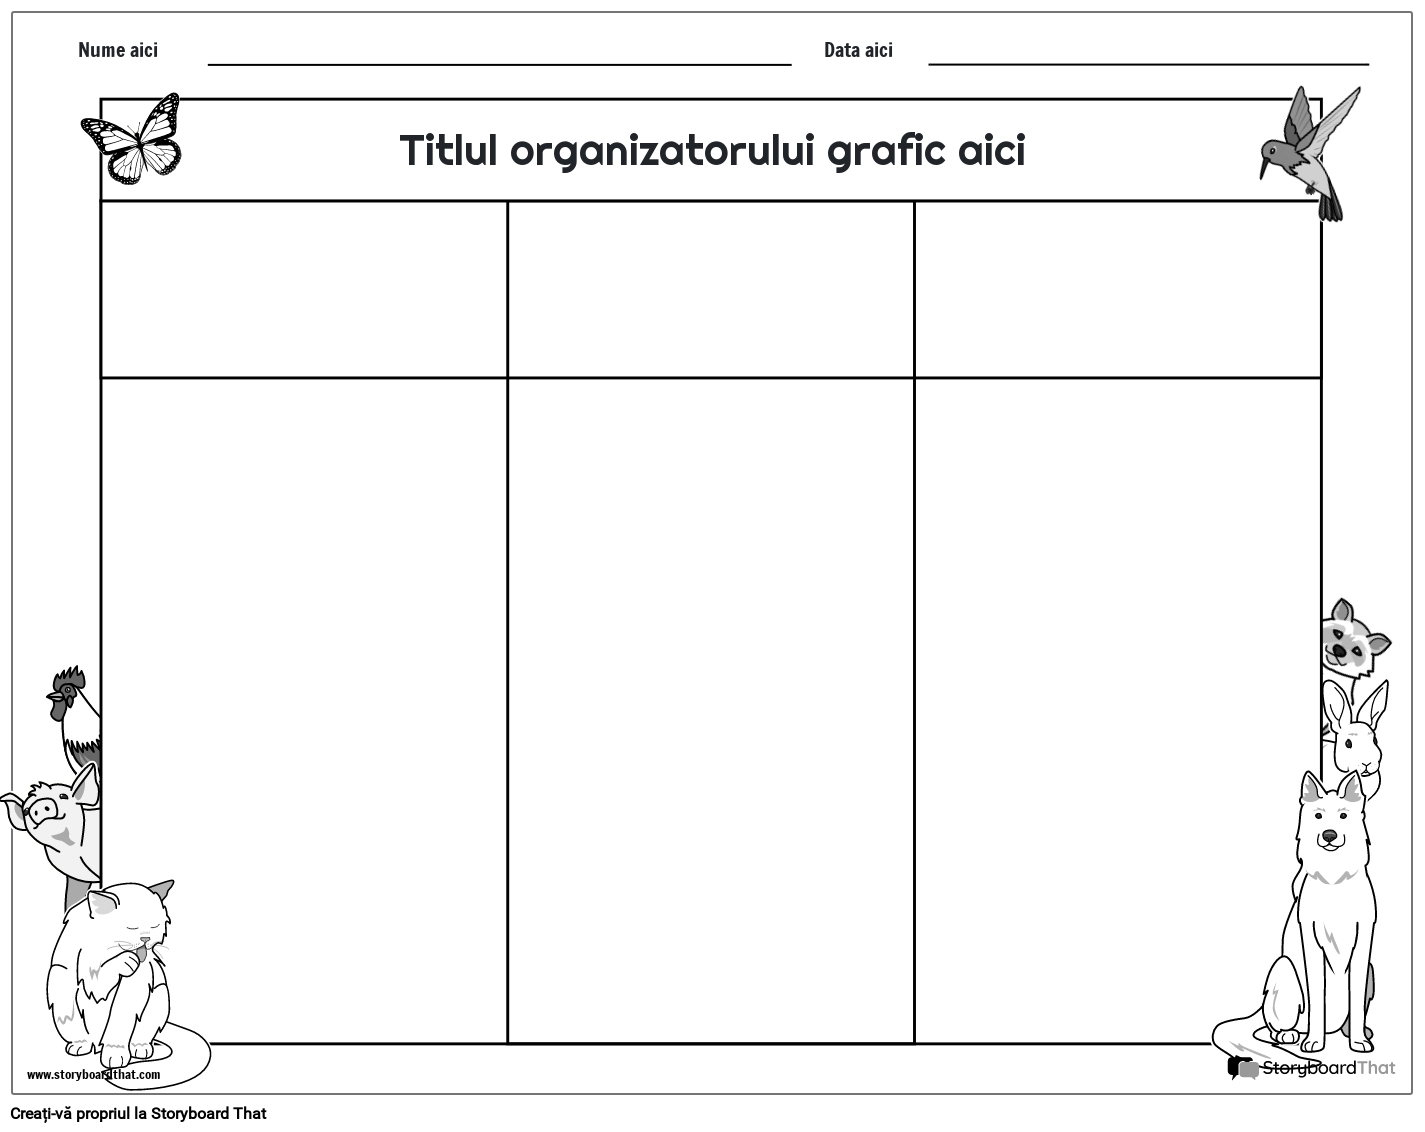 Noua pagină de creare a organizatorului grafic general 3 (alb-negru)